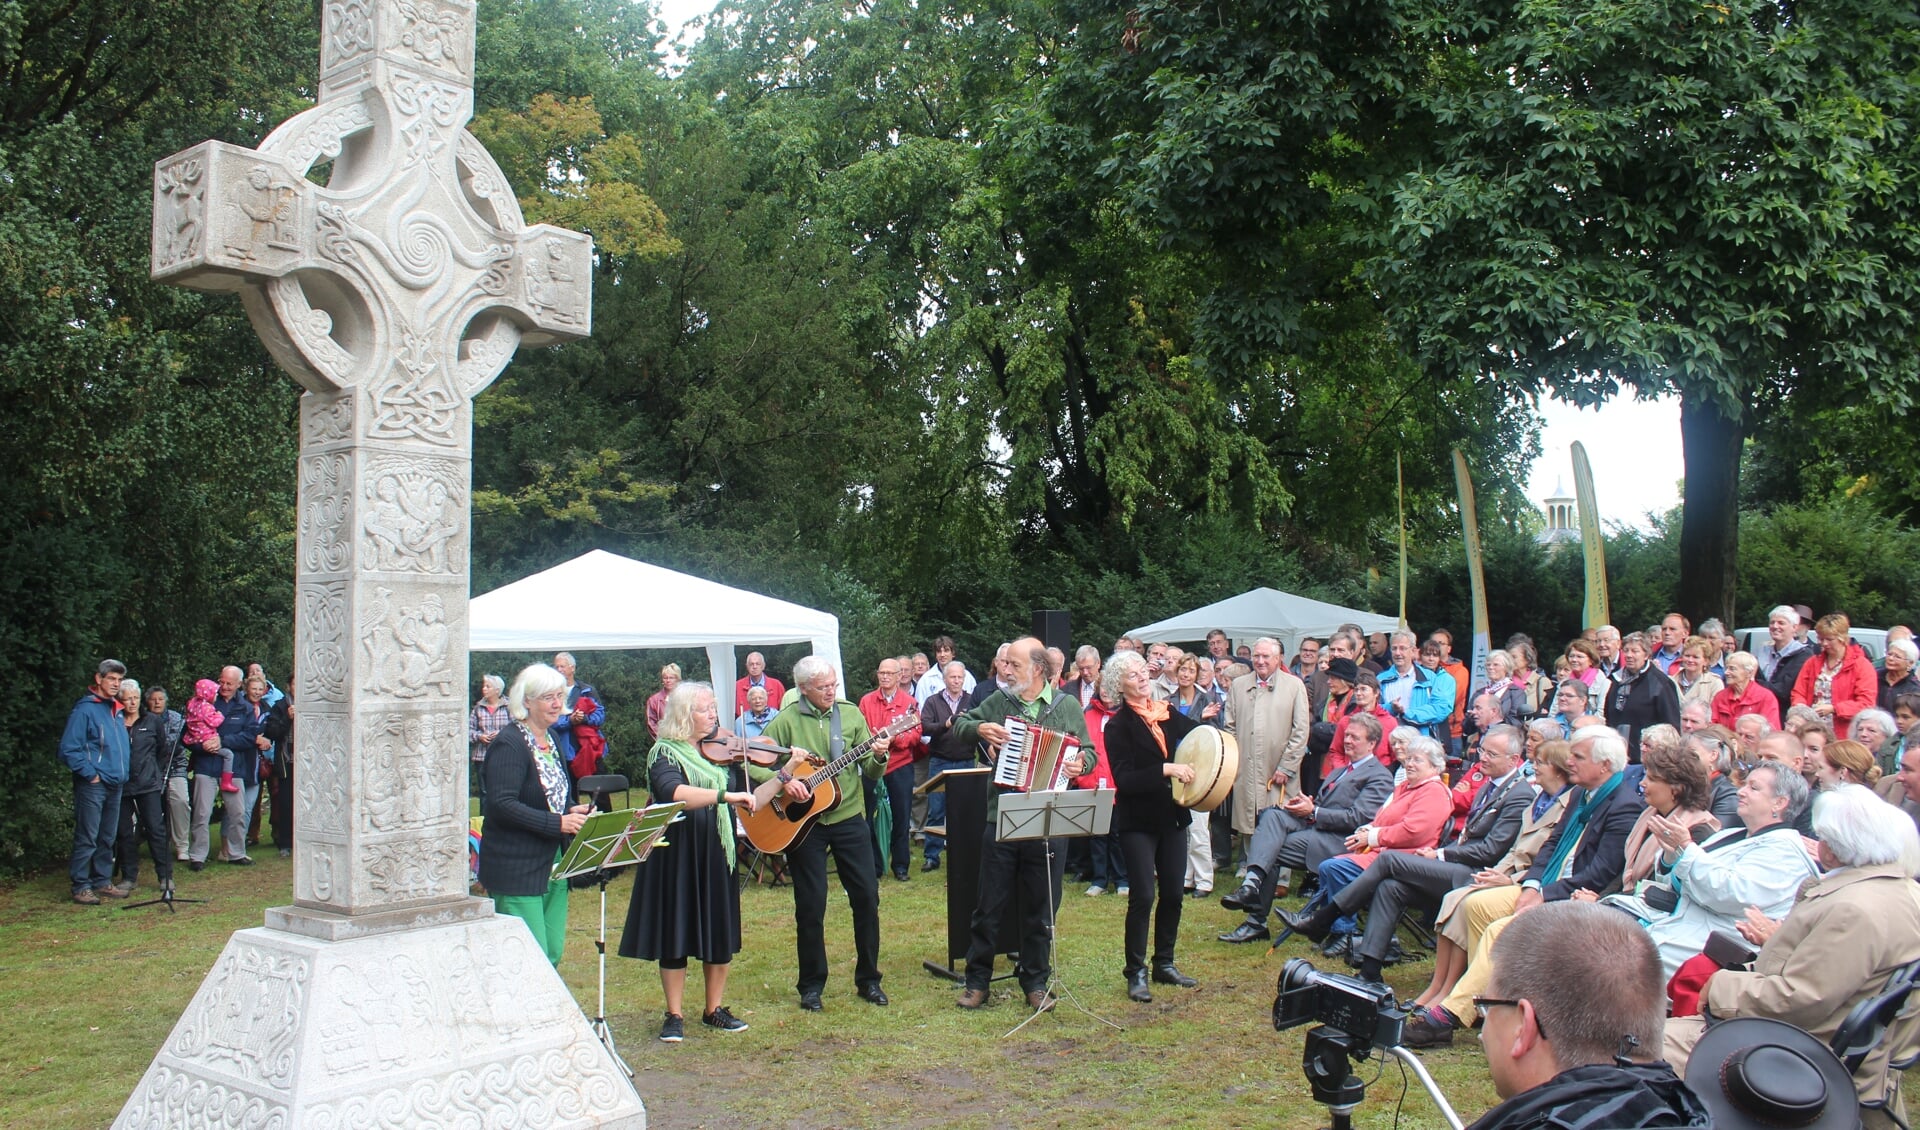 In het van Boetzelaerspark in De Bilt werd 14 september 2013 onder grote belangstelling het Iers Hoogkruis onthuld. Het kruis staat symbool voor de geschiedenis van De Bilt dat toen zijn 900-jarig bestaan vierde.